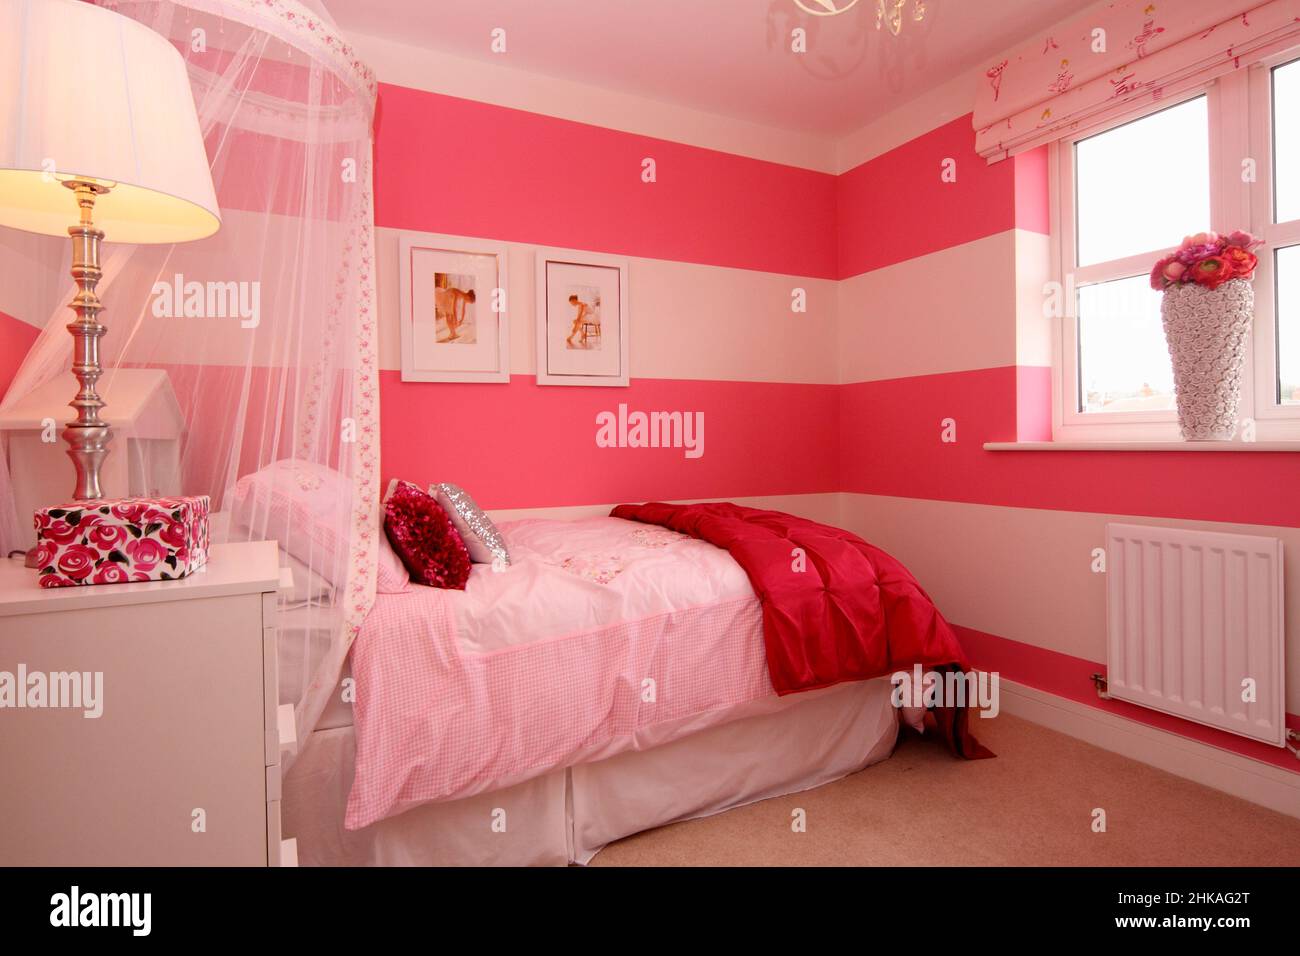 Dormitorio de chicas rosa y blanco, coronilla con dosel, fotos bailarinas de ballet en la pared, luz al lado de la cama. Foto de stock